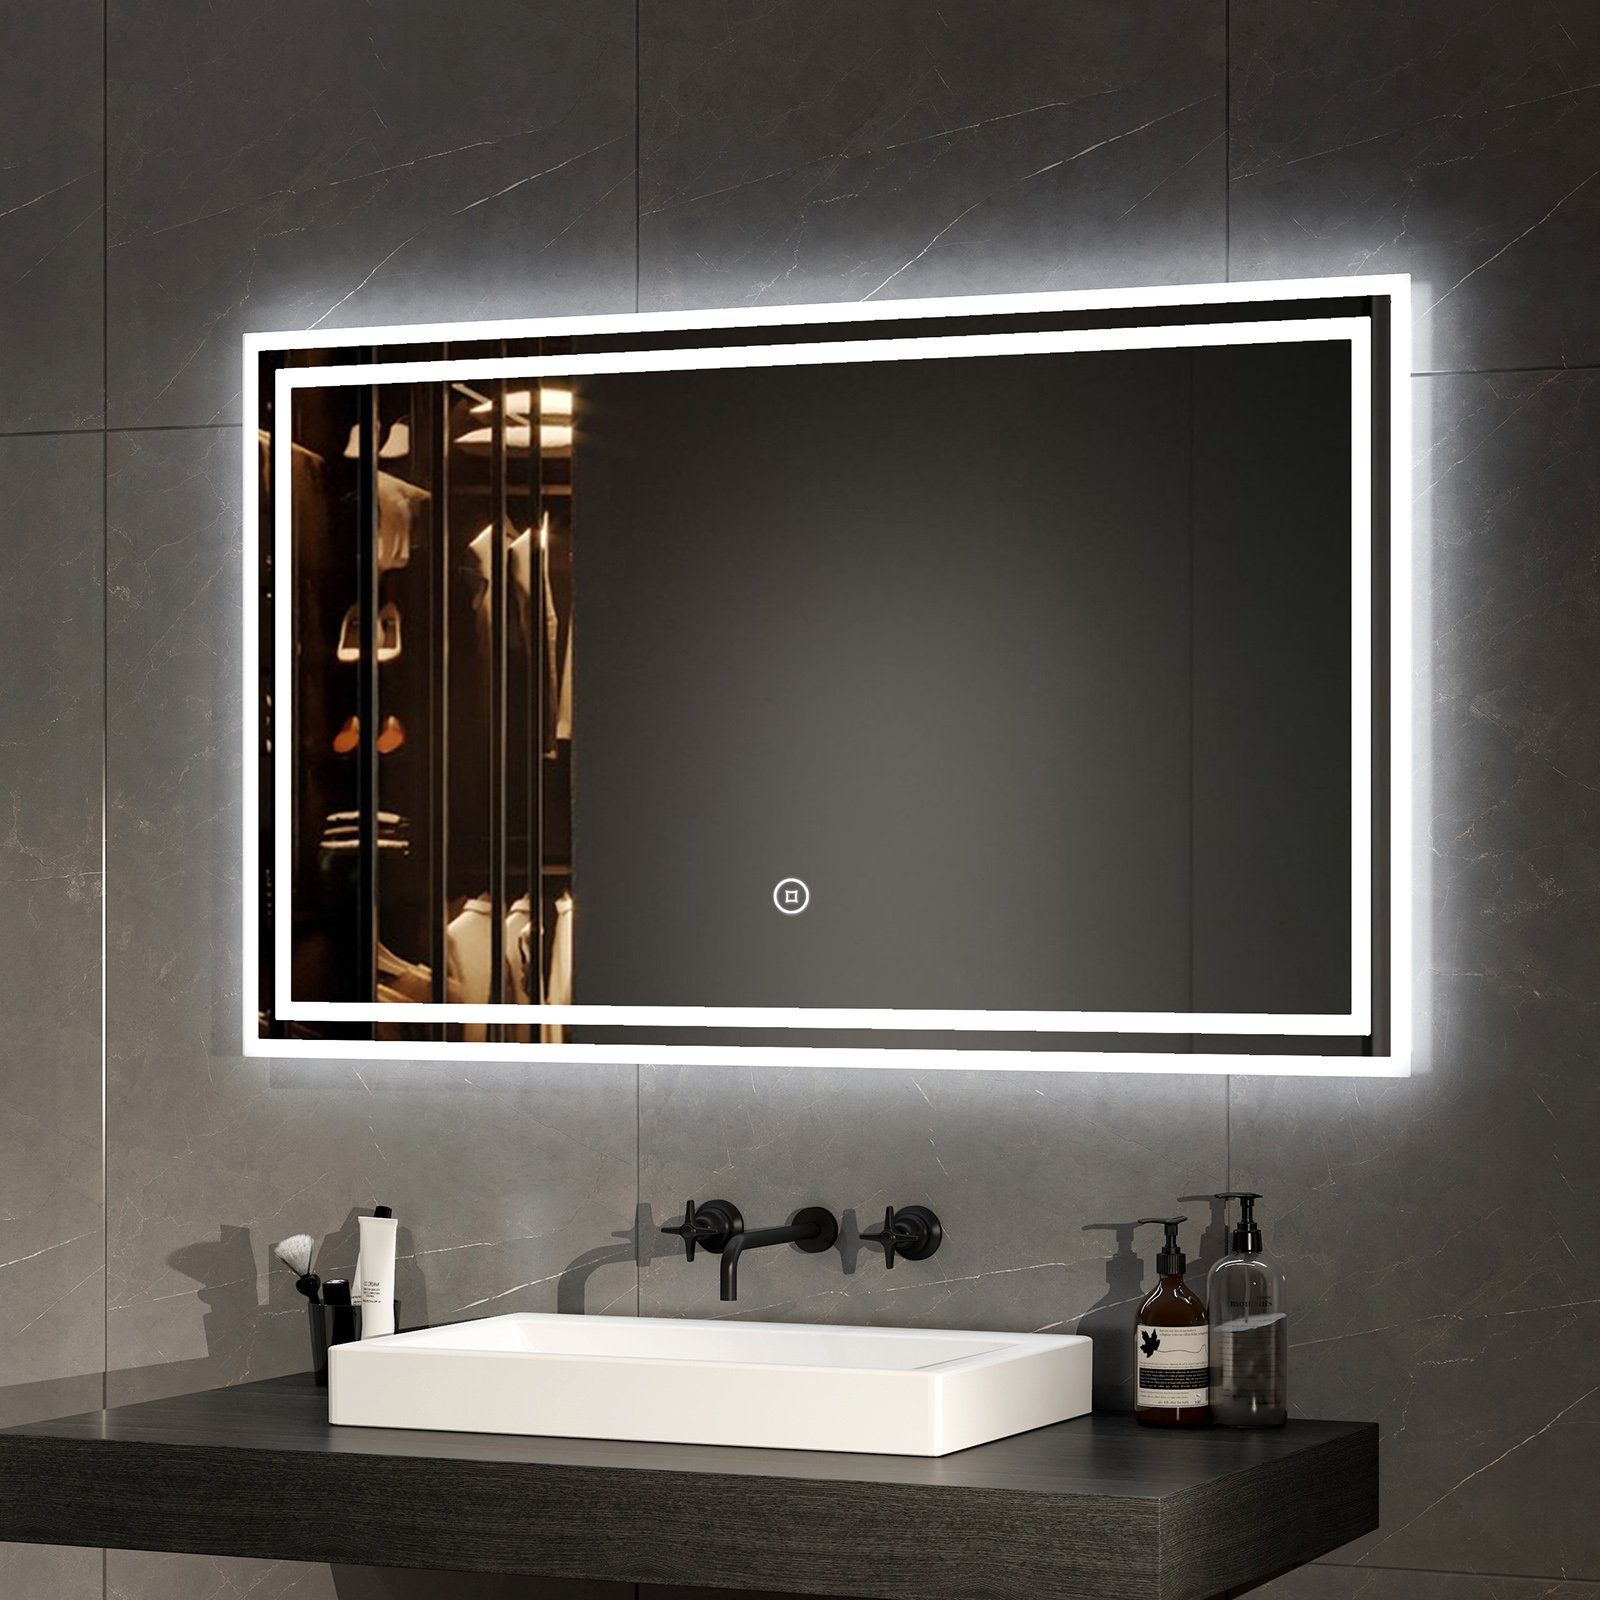 Install Einfach Beleuchtung Wandspiegel EMKE Lichtfarben mit LED 3 Energiesparend Explosionsschutz Badezimmerspiegel Badspiegel Badezimmerspiegel,